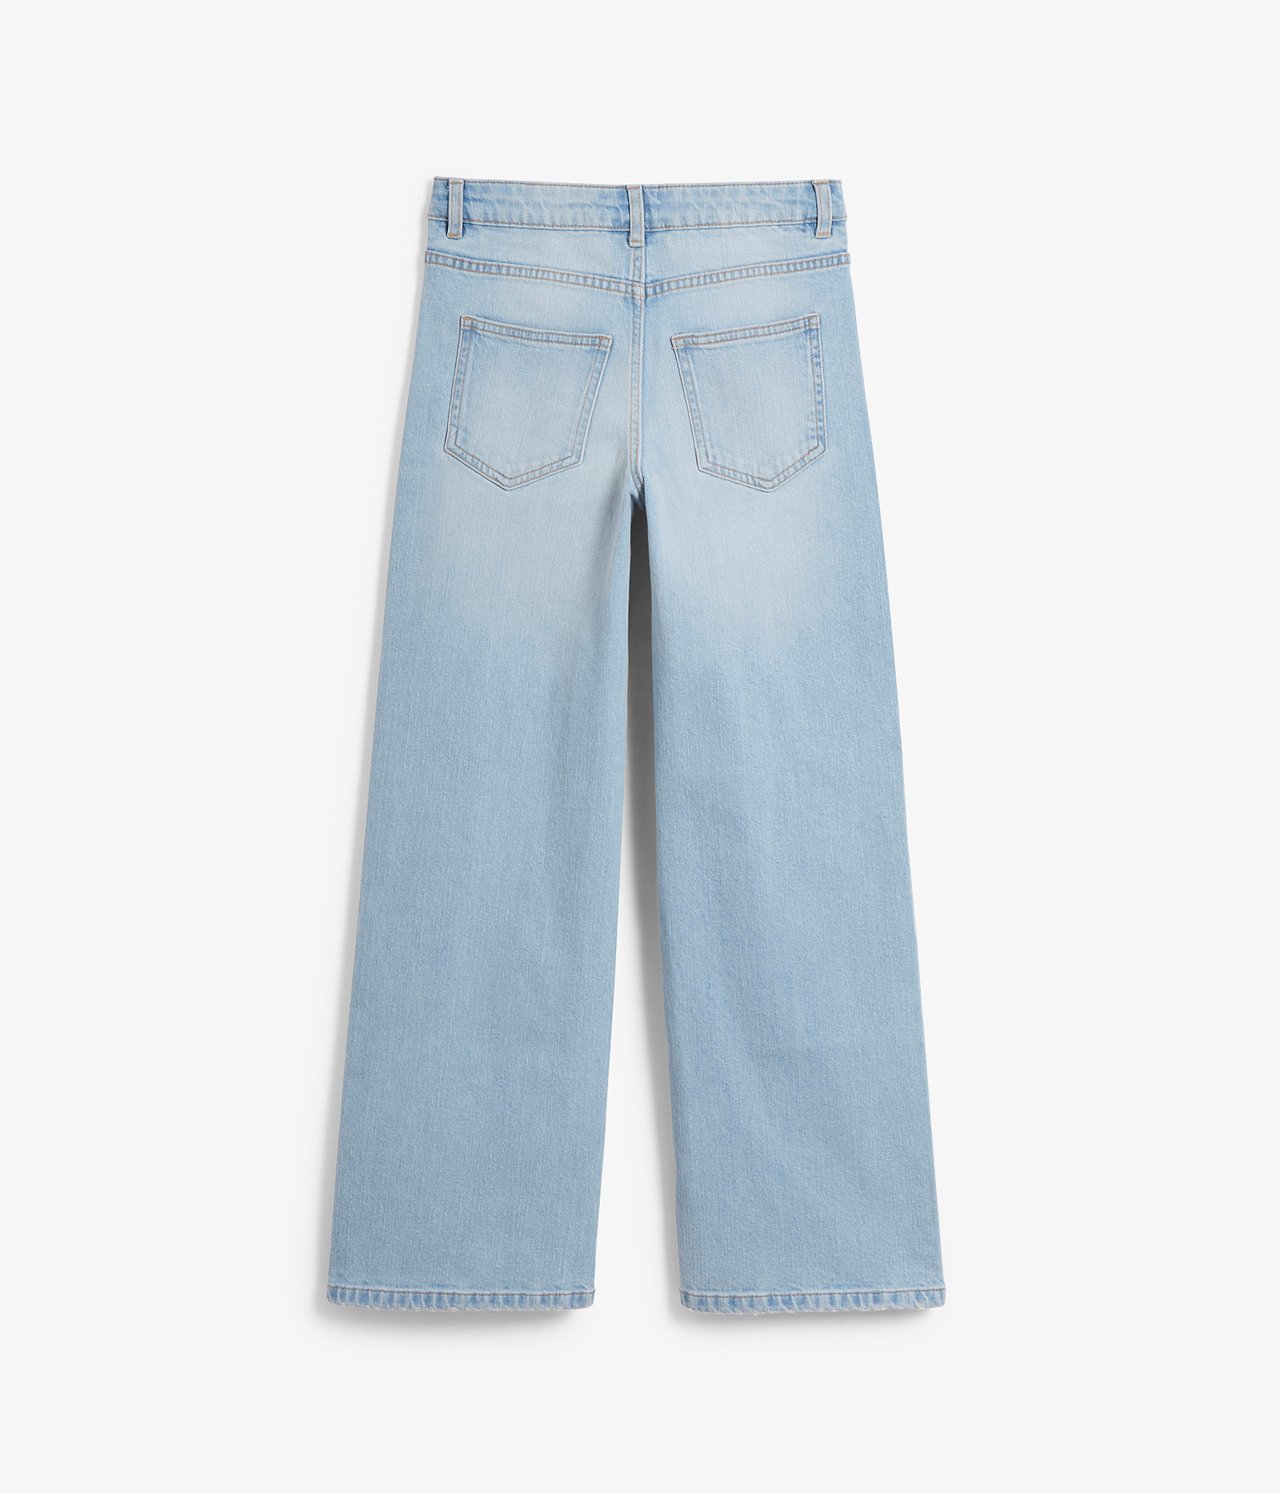 Jeans wide fit mid waist - Jasny dżins - 8